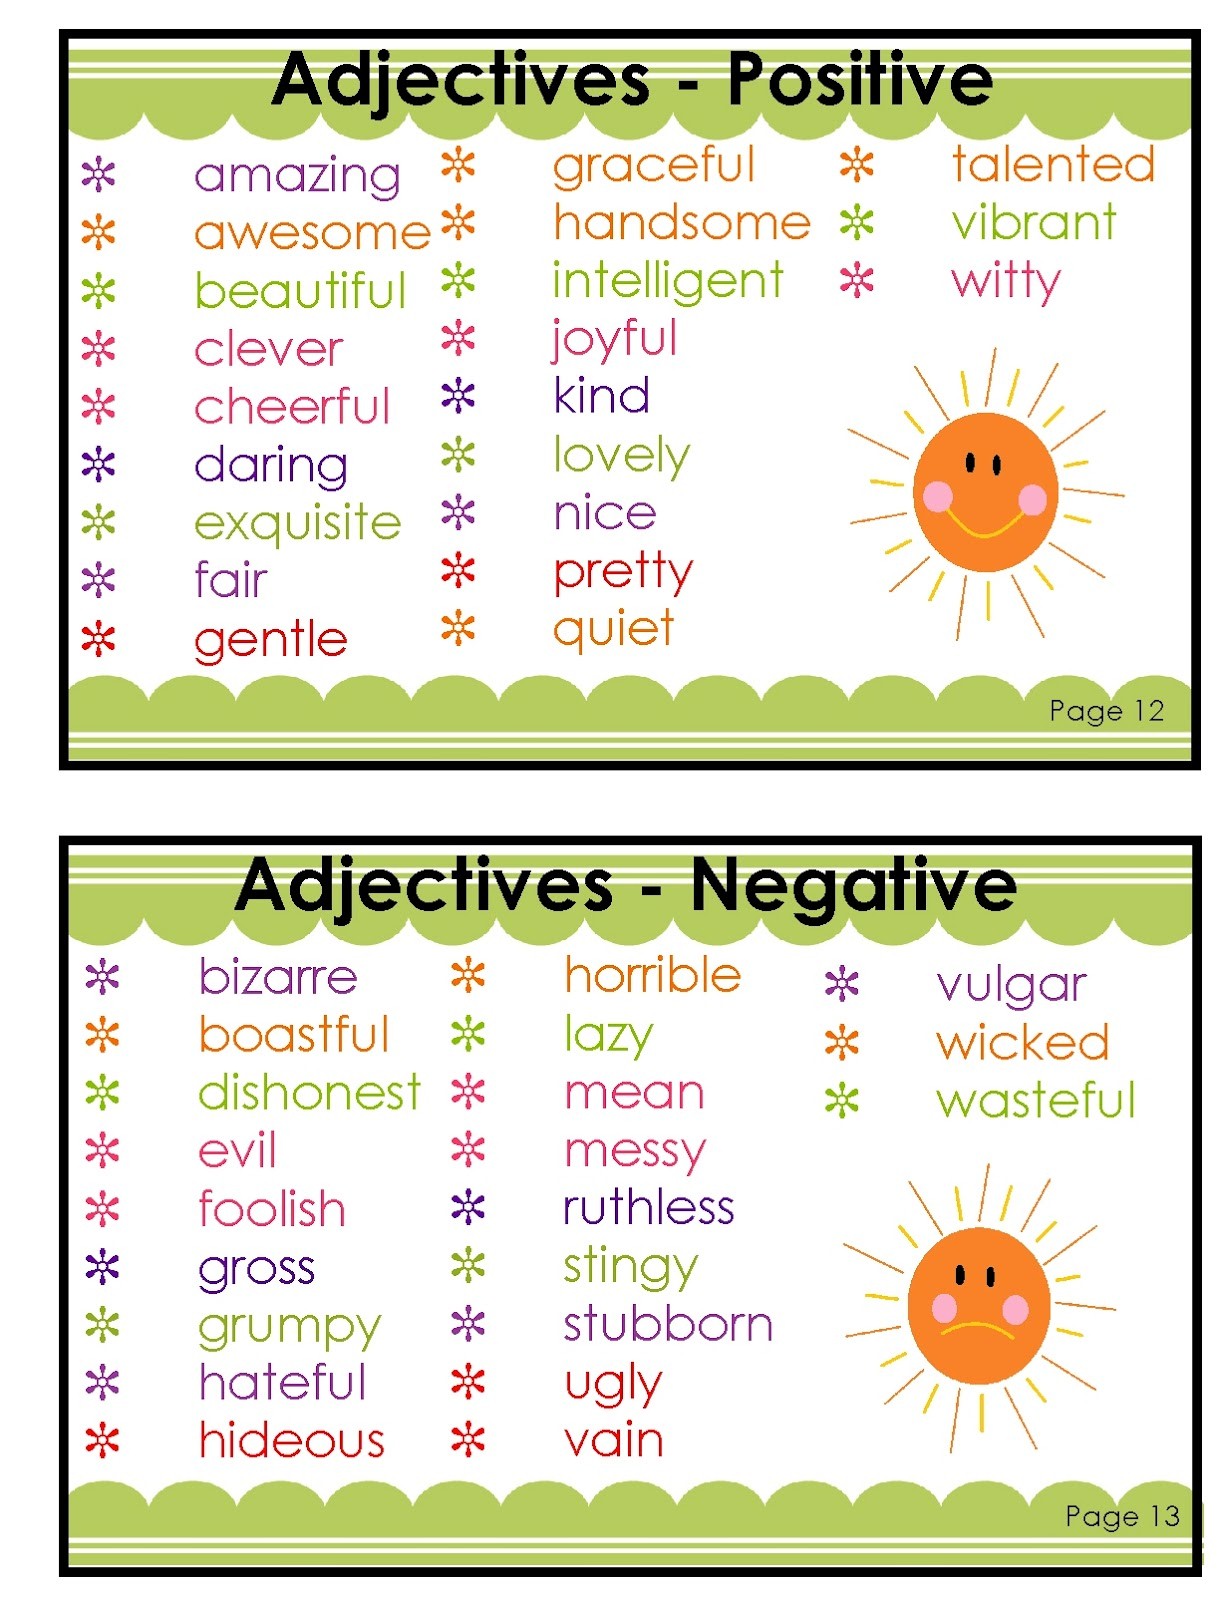 Adjective negative